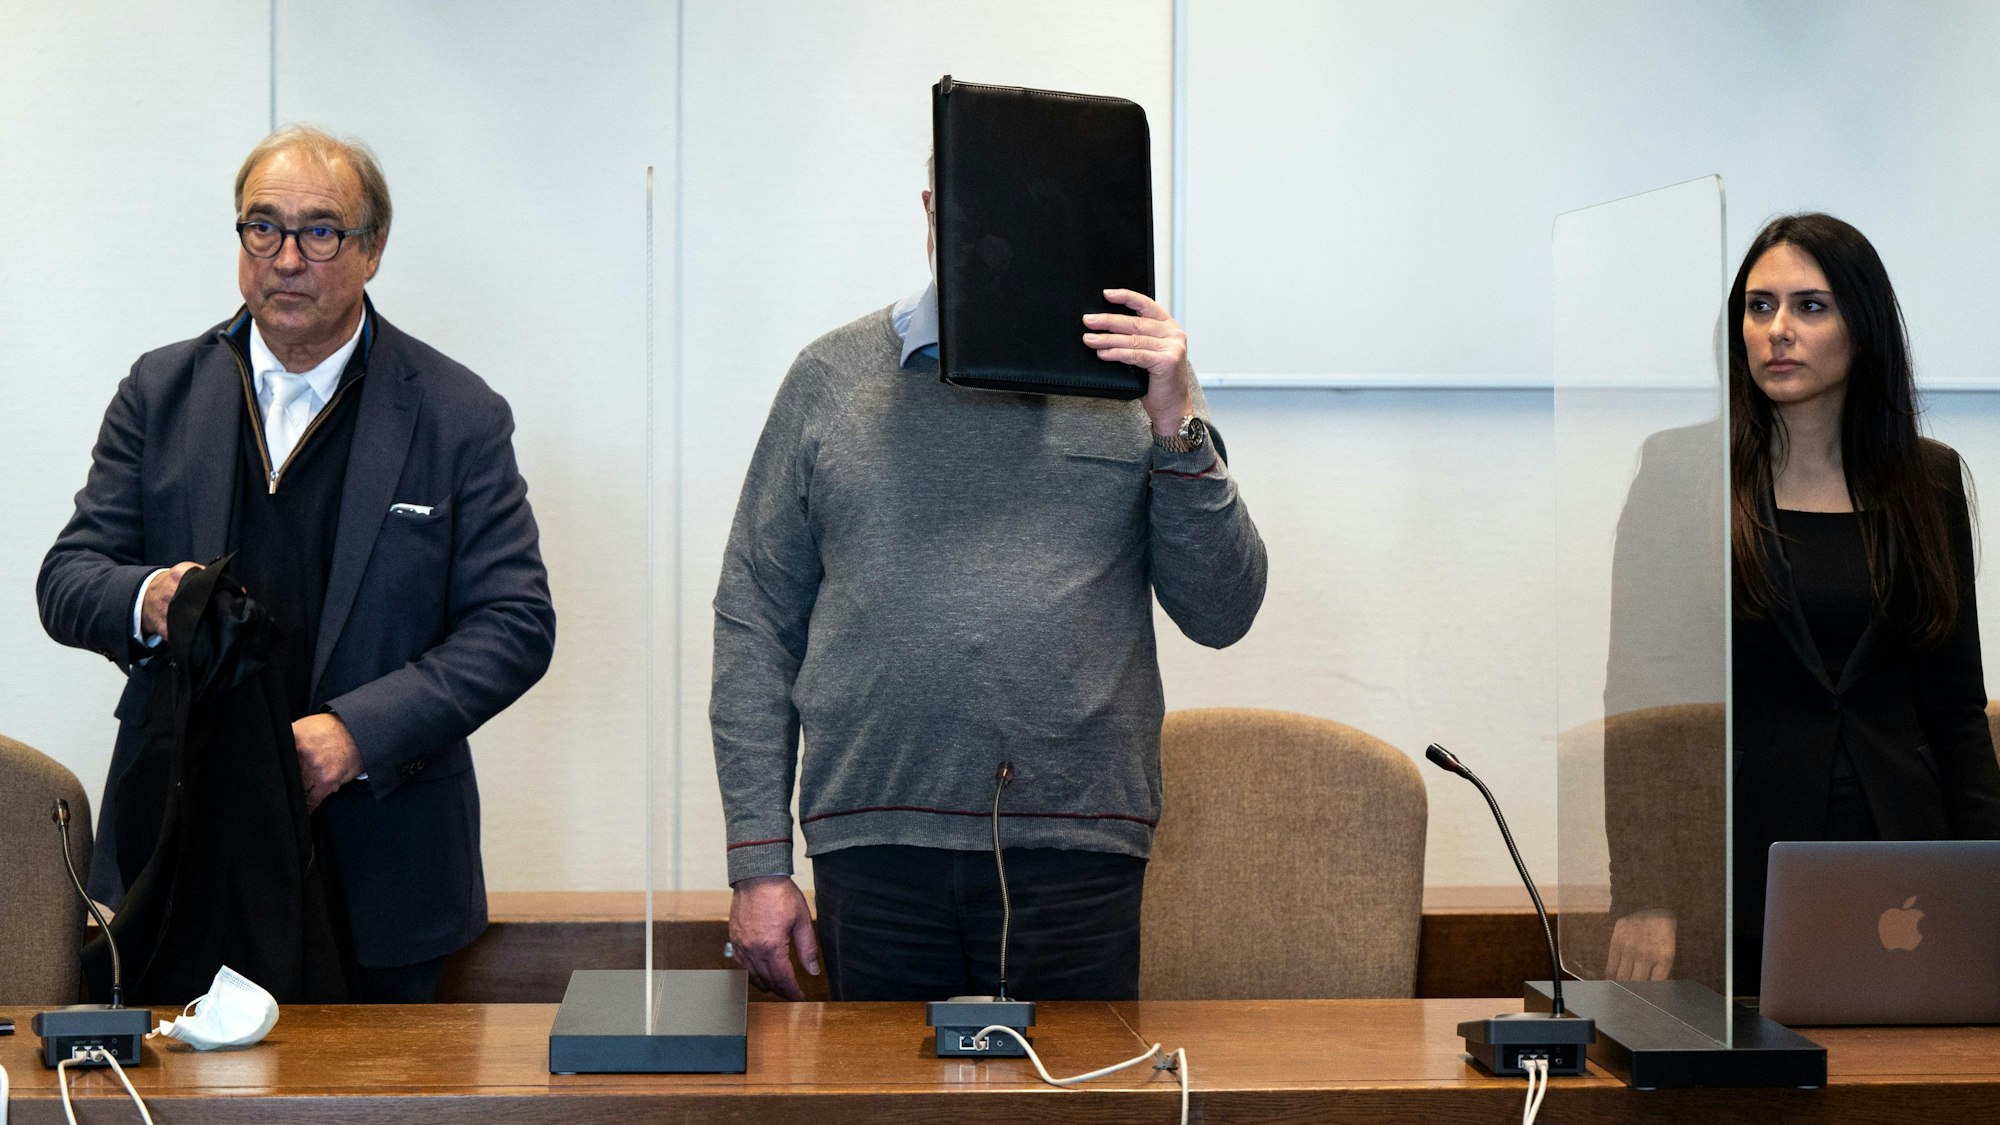 Der angeklagte katholische Priester hält sich im Gerichtssaal eine Mappe vor das Gesicht. Links und rechts stehen sein Anwalt beziehungsweise seine Anwältin.